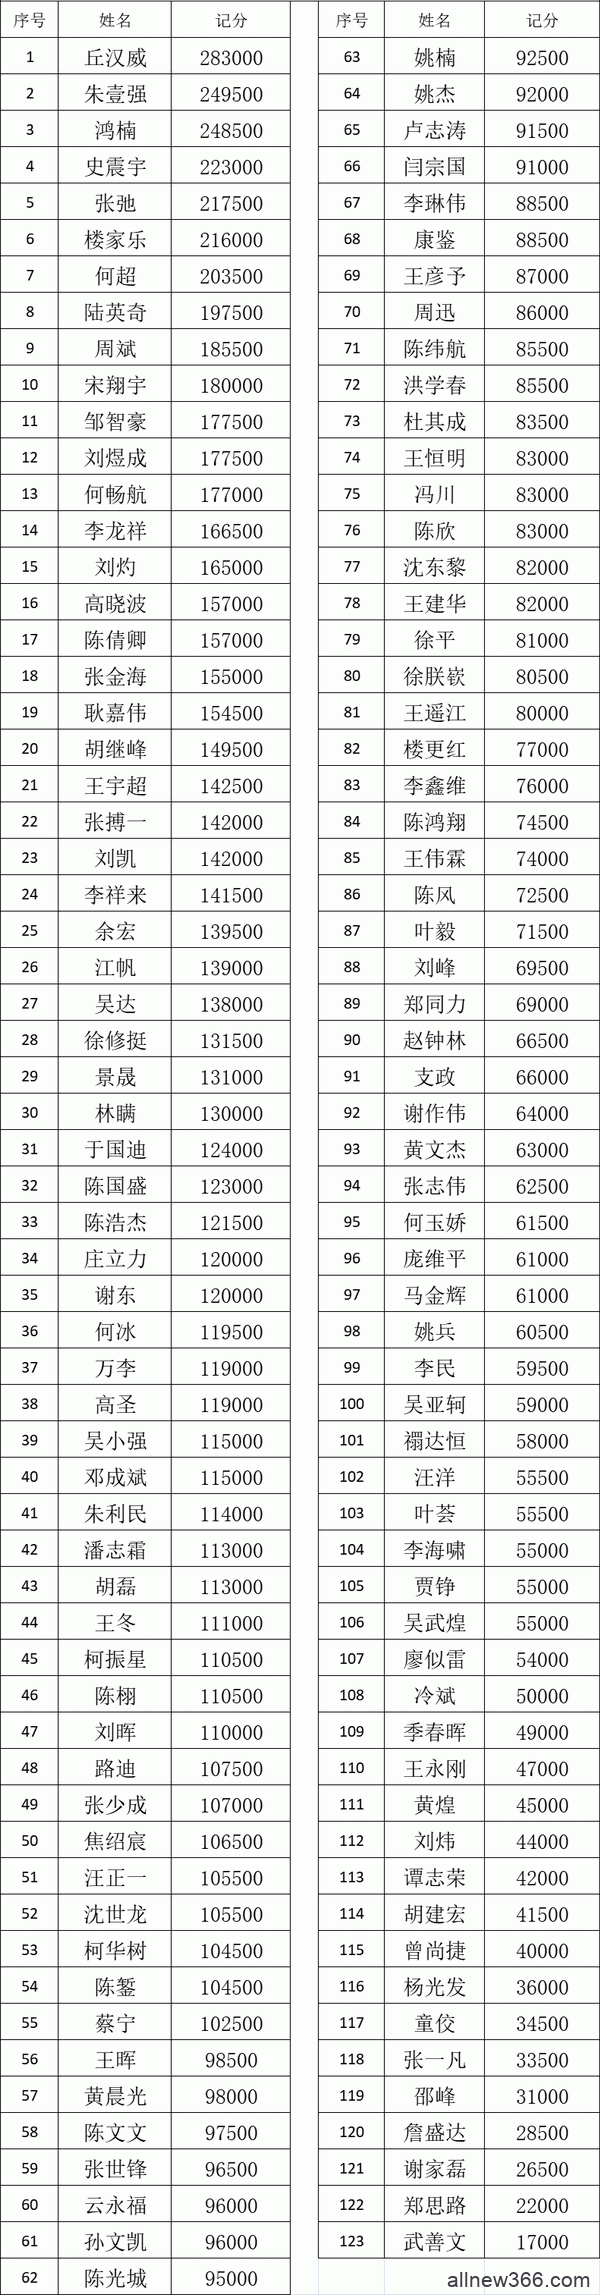 2021CPG福州站｜ 主赛B组420人参赛,123人晋级！